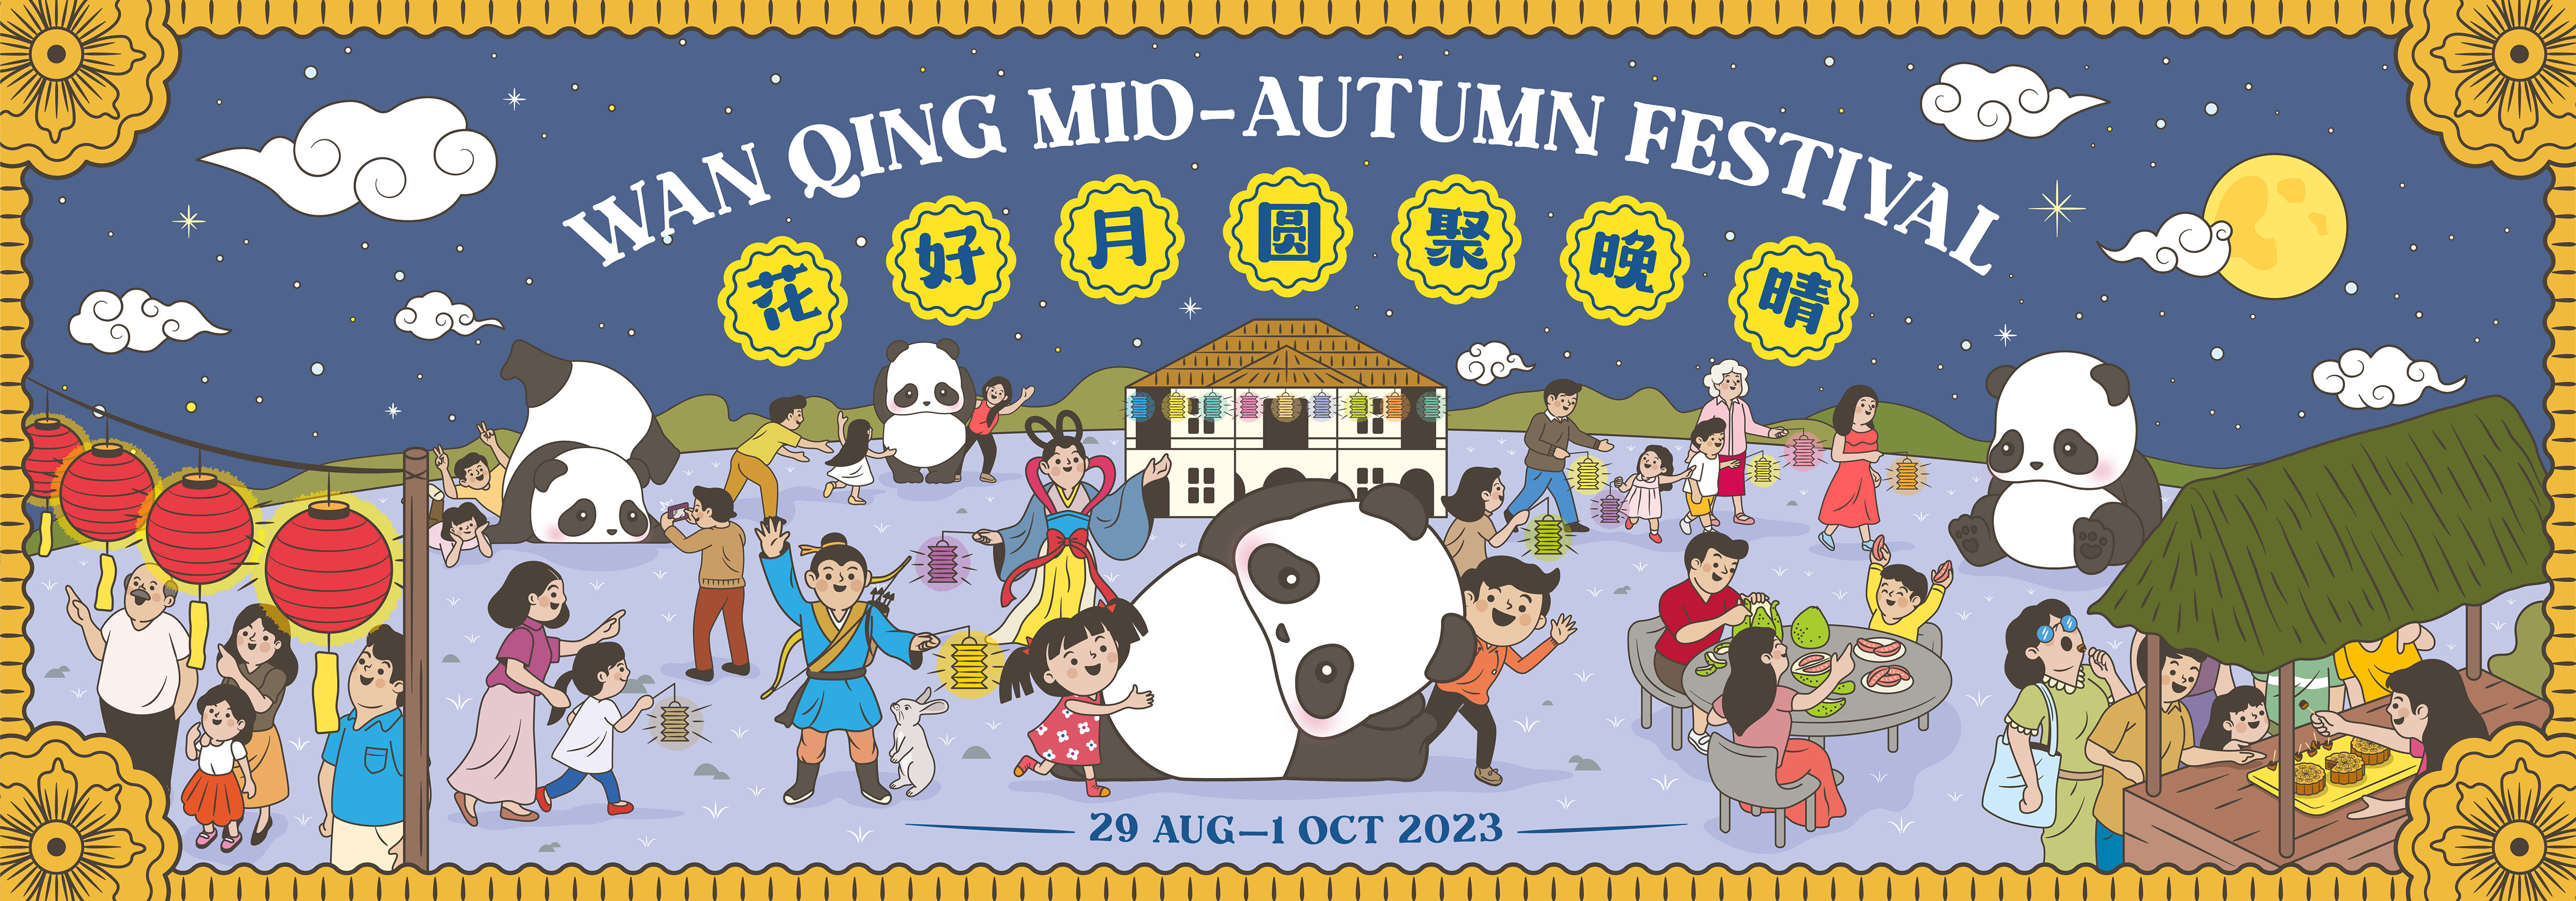 China Institute Mid Autumn Family Festival 2023 - China Institute